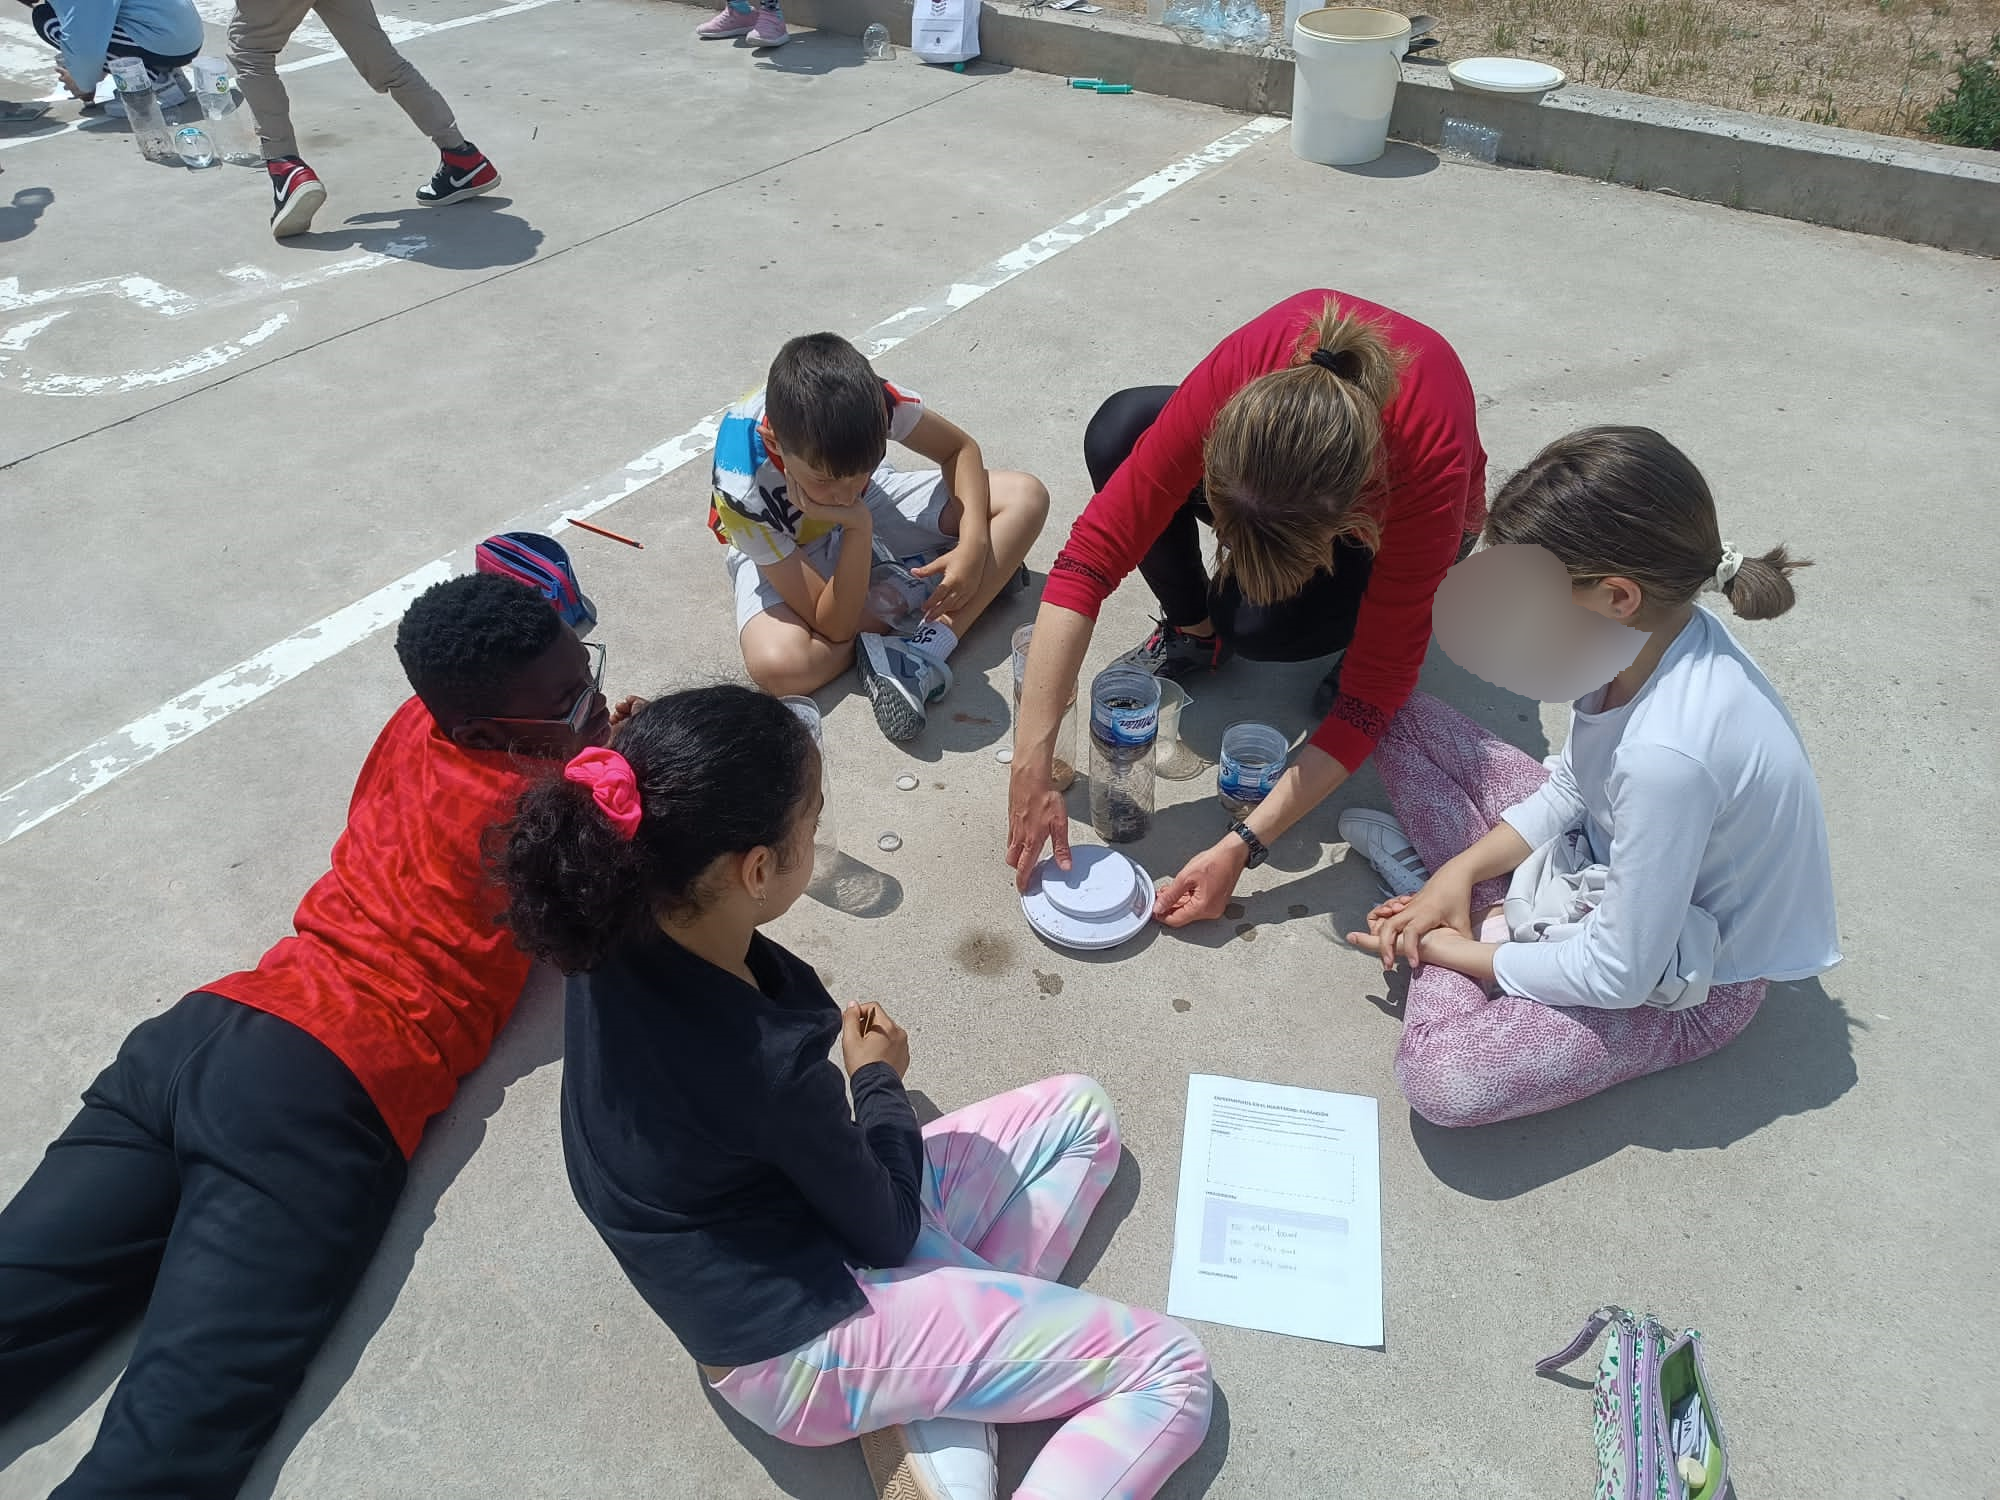 Estudiantes sentados en el suelo del patio haciendo una actividad sobre las características de los materiales